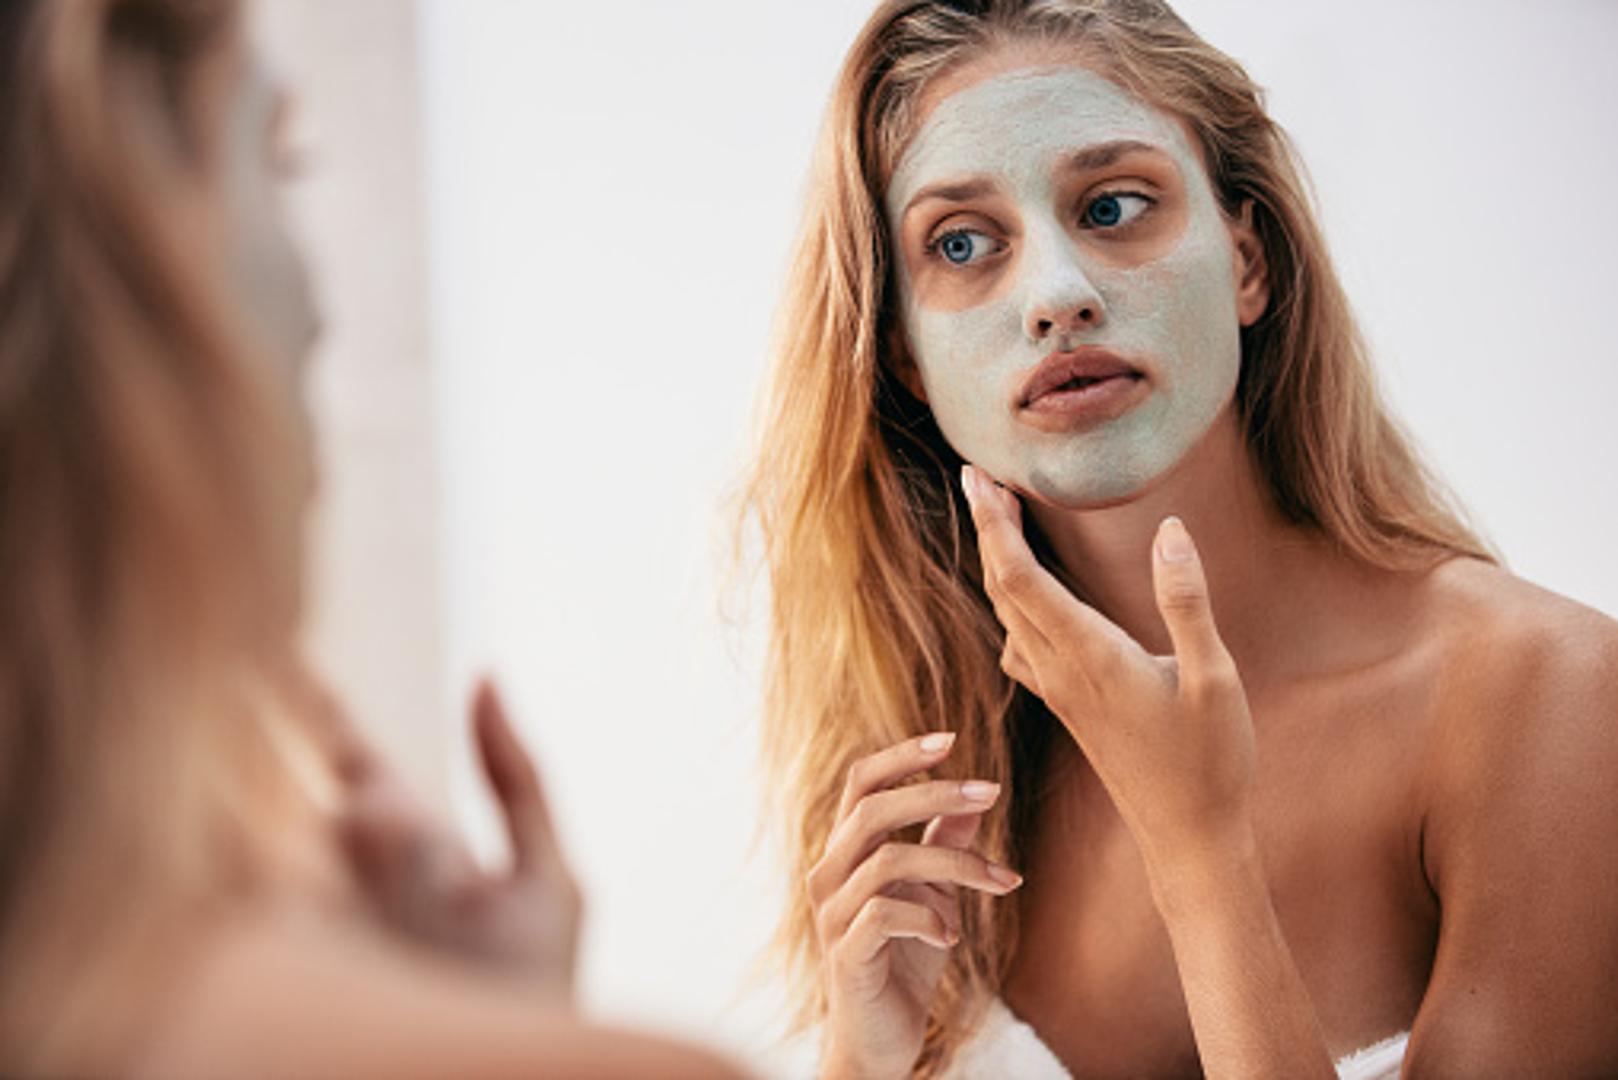 Koristite previše proizvoda za njegu – Previše kozmetike nikada nije dobro. Možete oštetiti i isušiti kožu umjesto učiniti je ljepšom pa se držite samo provjerenih proizvoda koji su dobri za vaše lice.